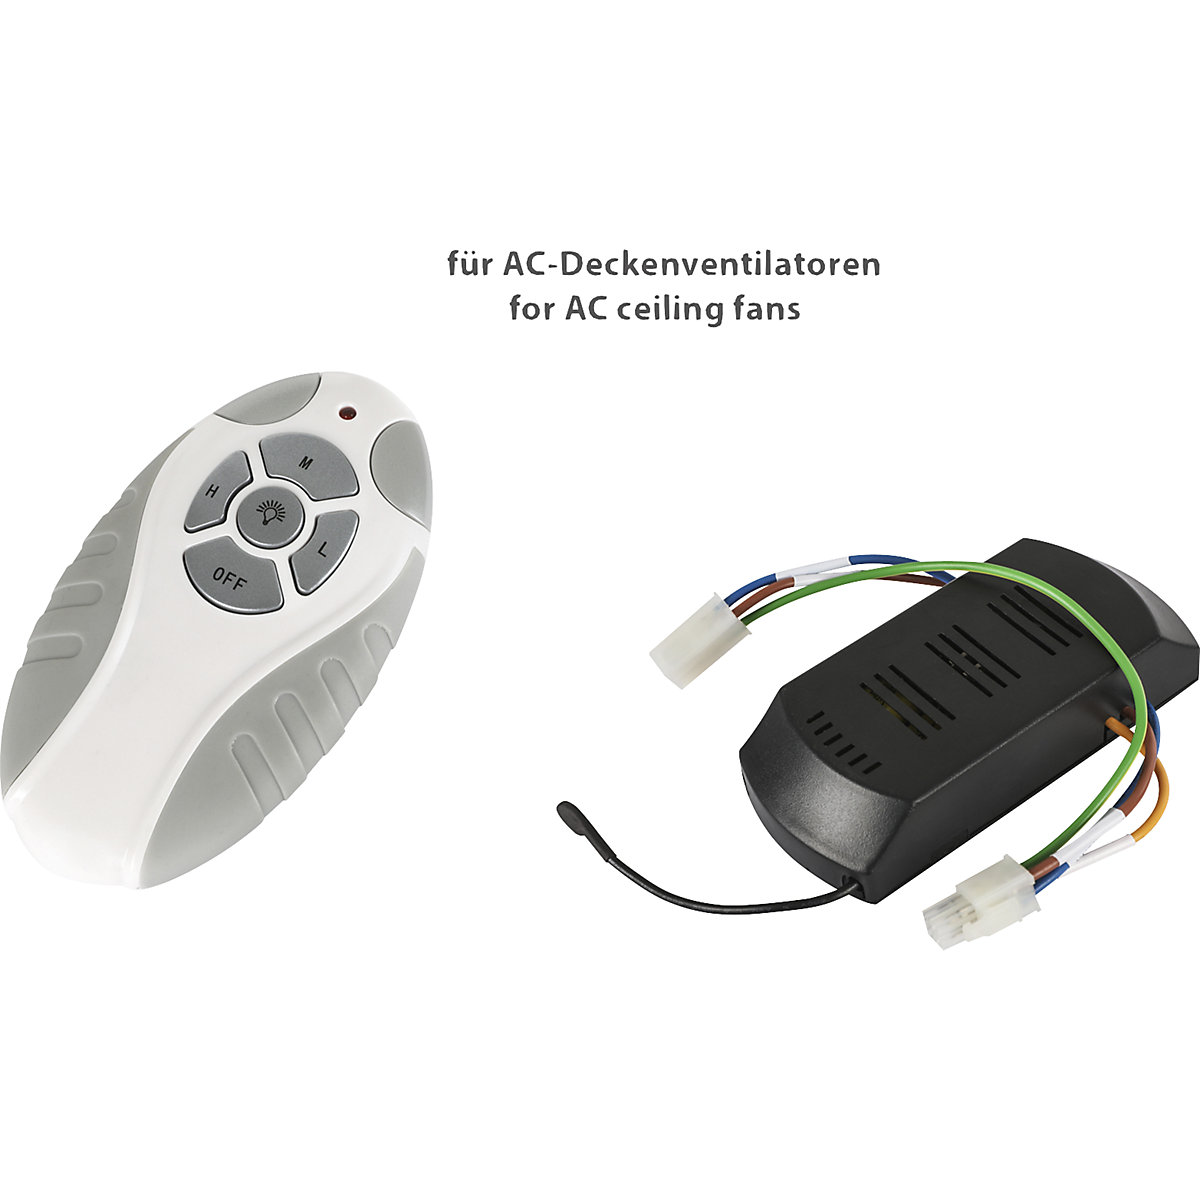 FNK-D multicode remote control